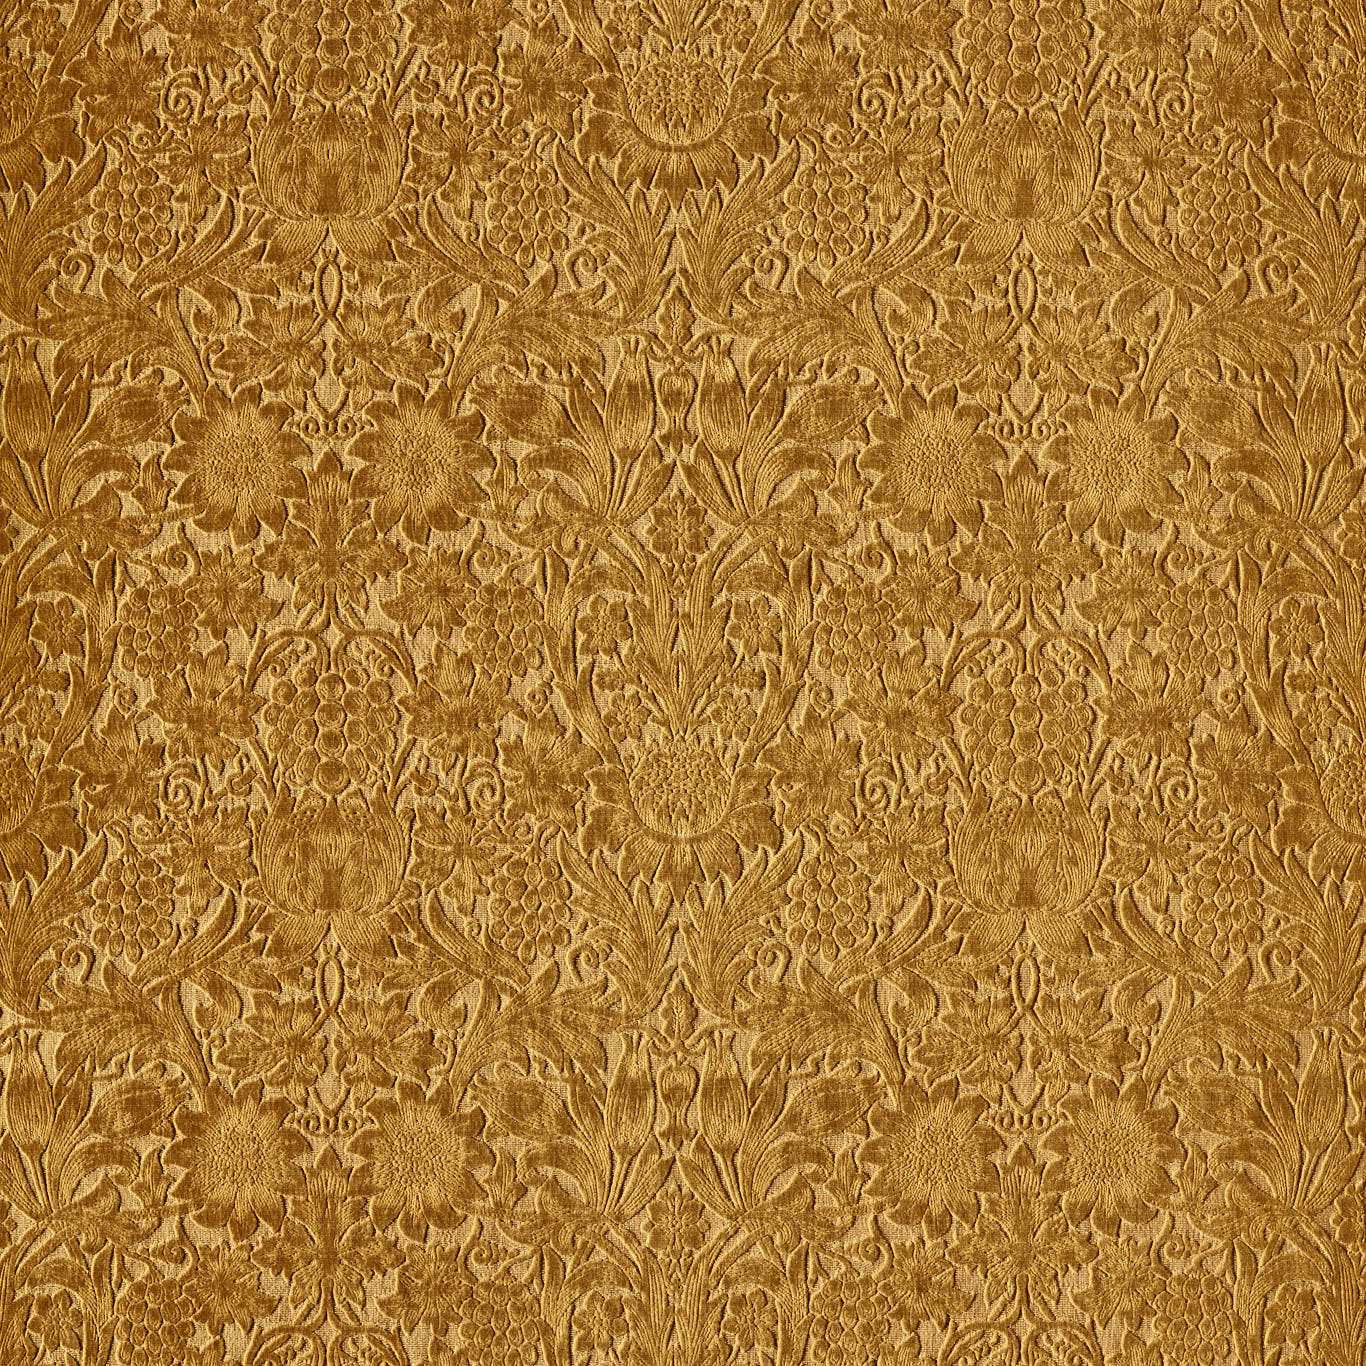 Sunflower Caffoy Velvet Sussex Rush Fabric By Morris & Co